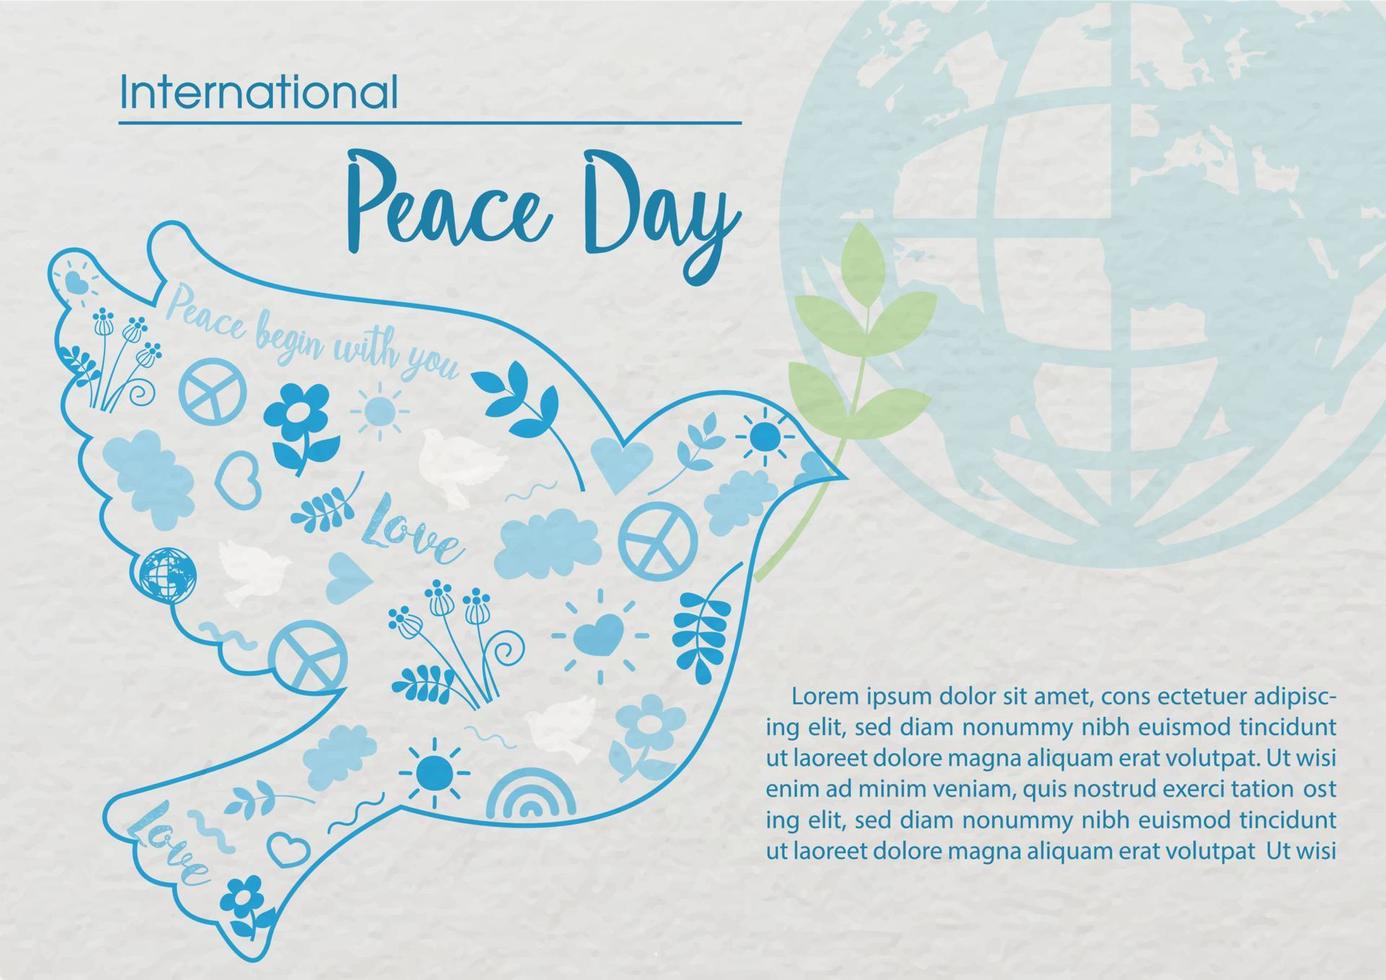 duva fred med tecken ikon av fred dag i platt stil och de dag, namn av händelse med global på vit papper mönster bakgrund. internationell fred dag affisch kampanj i vektor design.